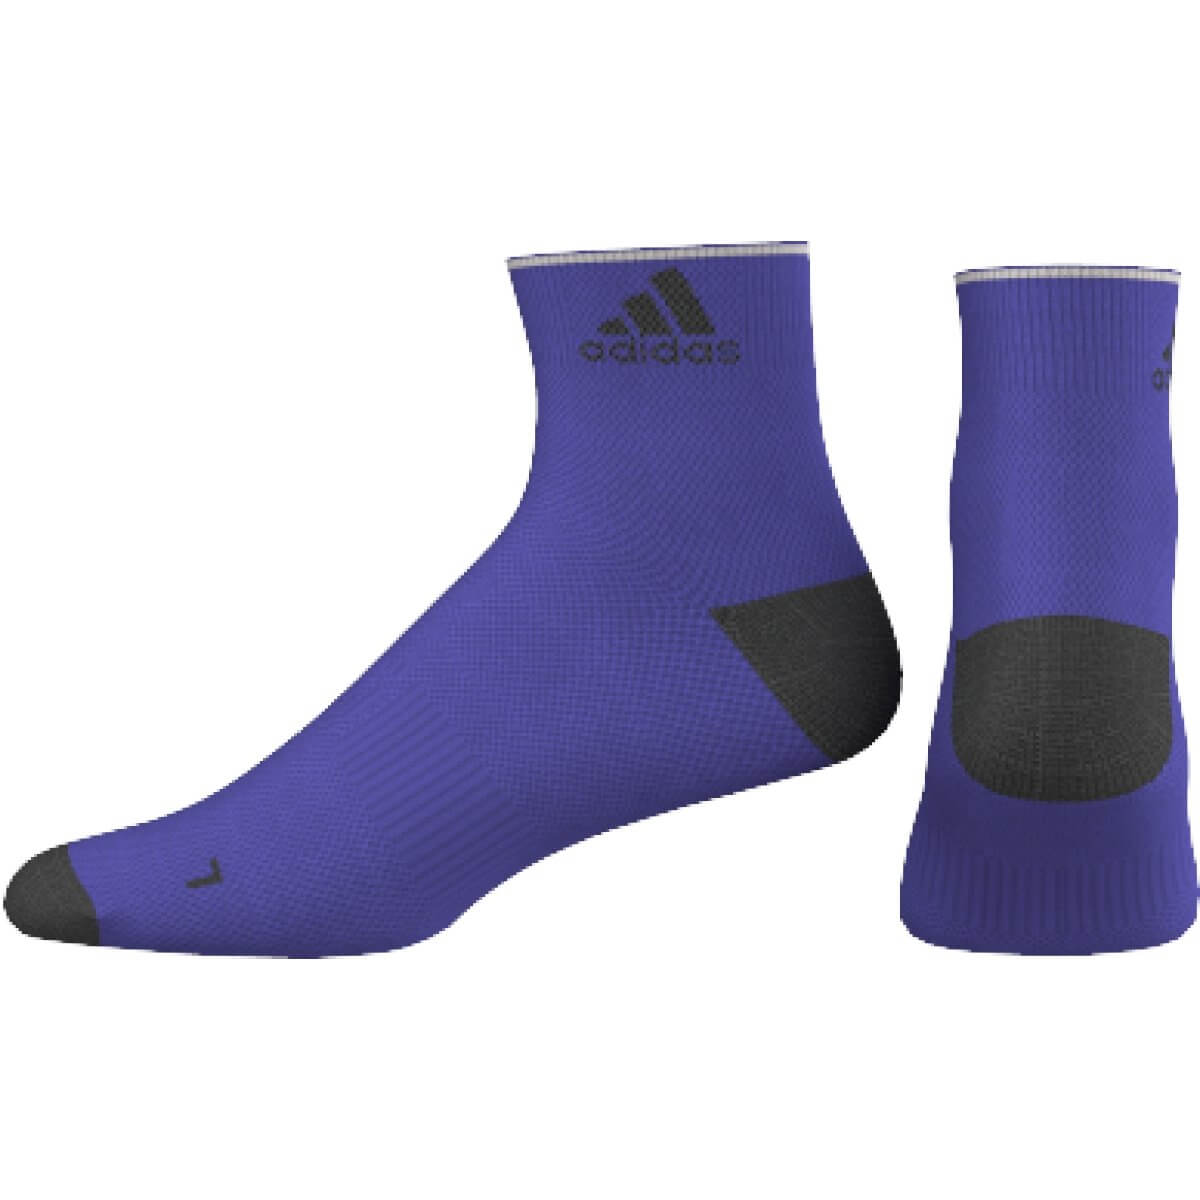 Ponožky adidas adizero ankle socks, 1 pair